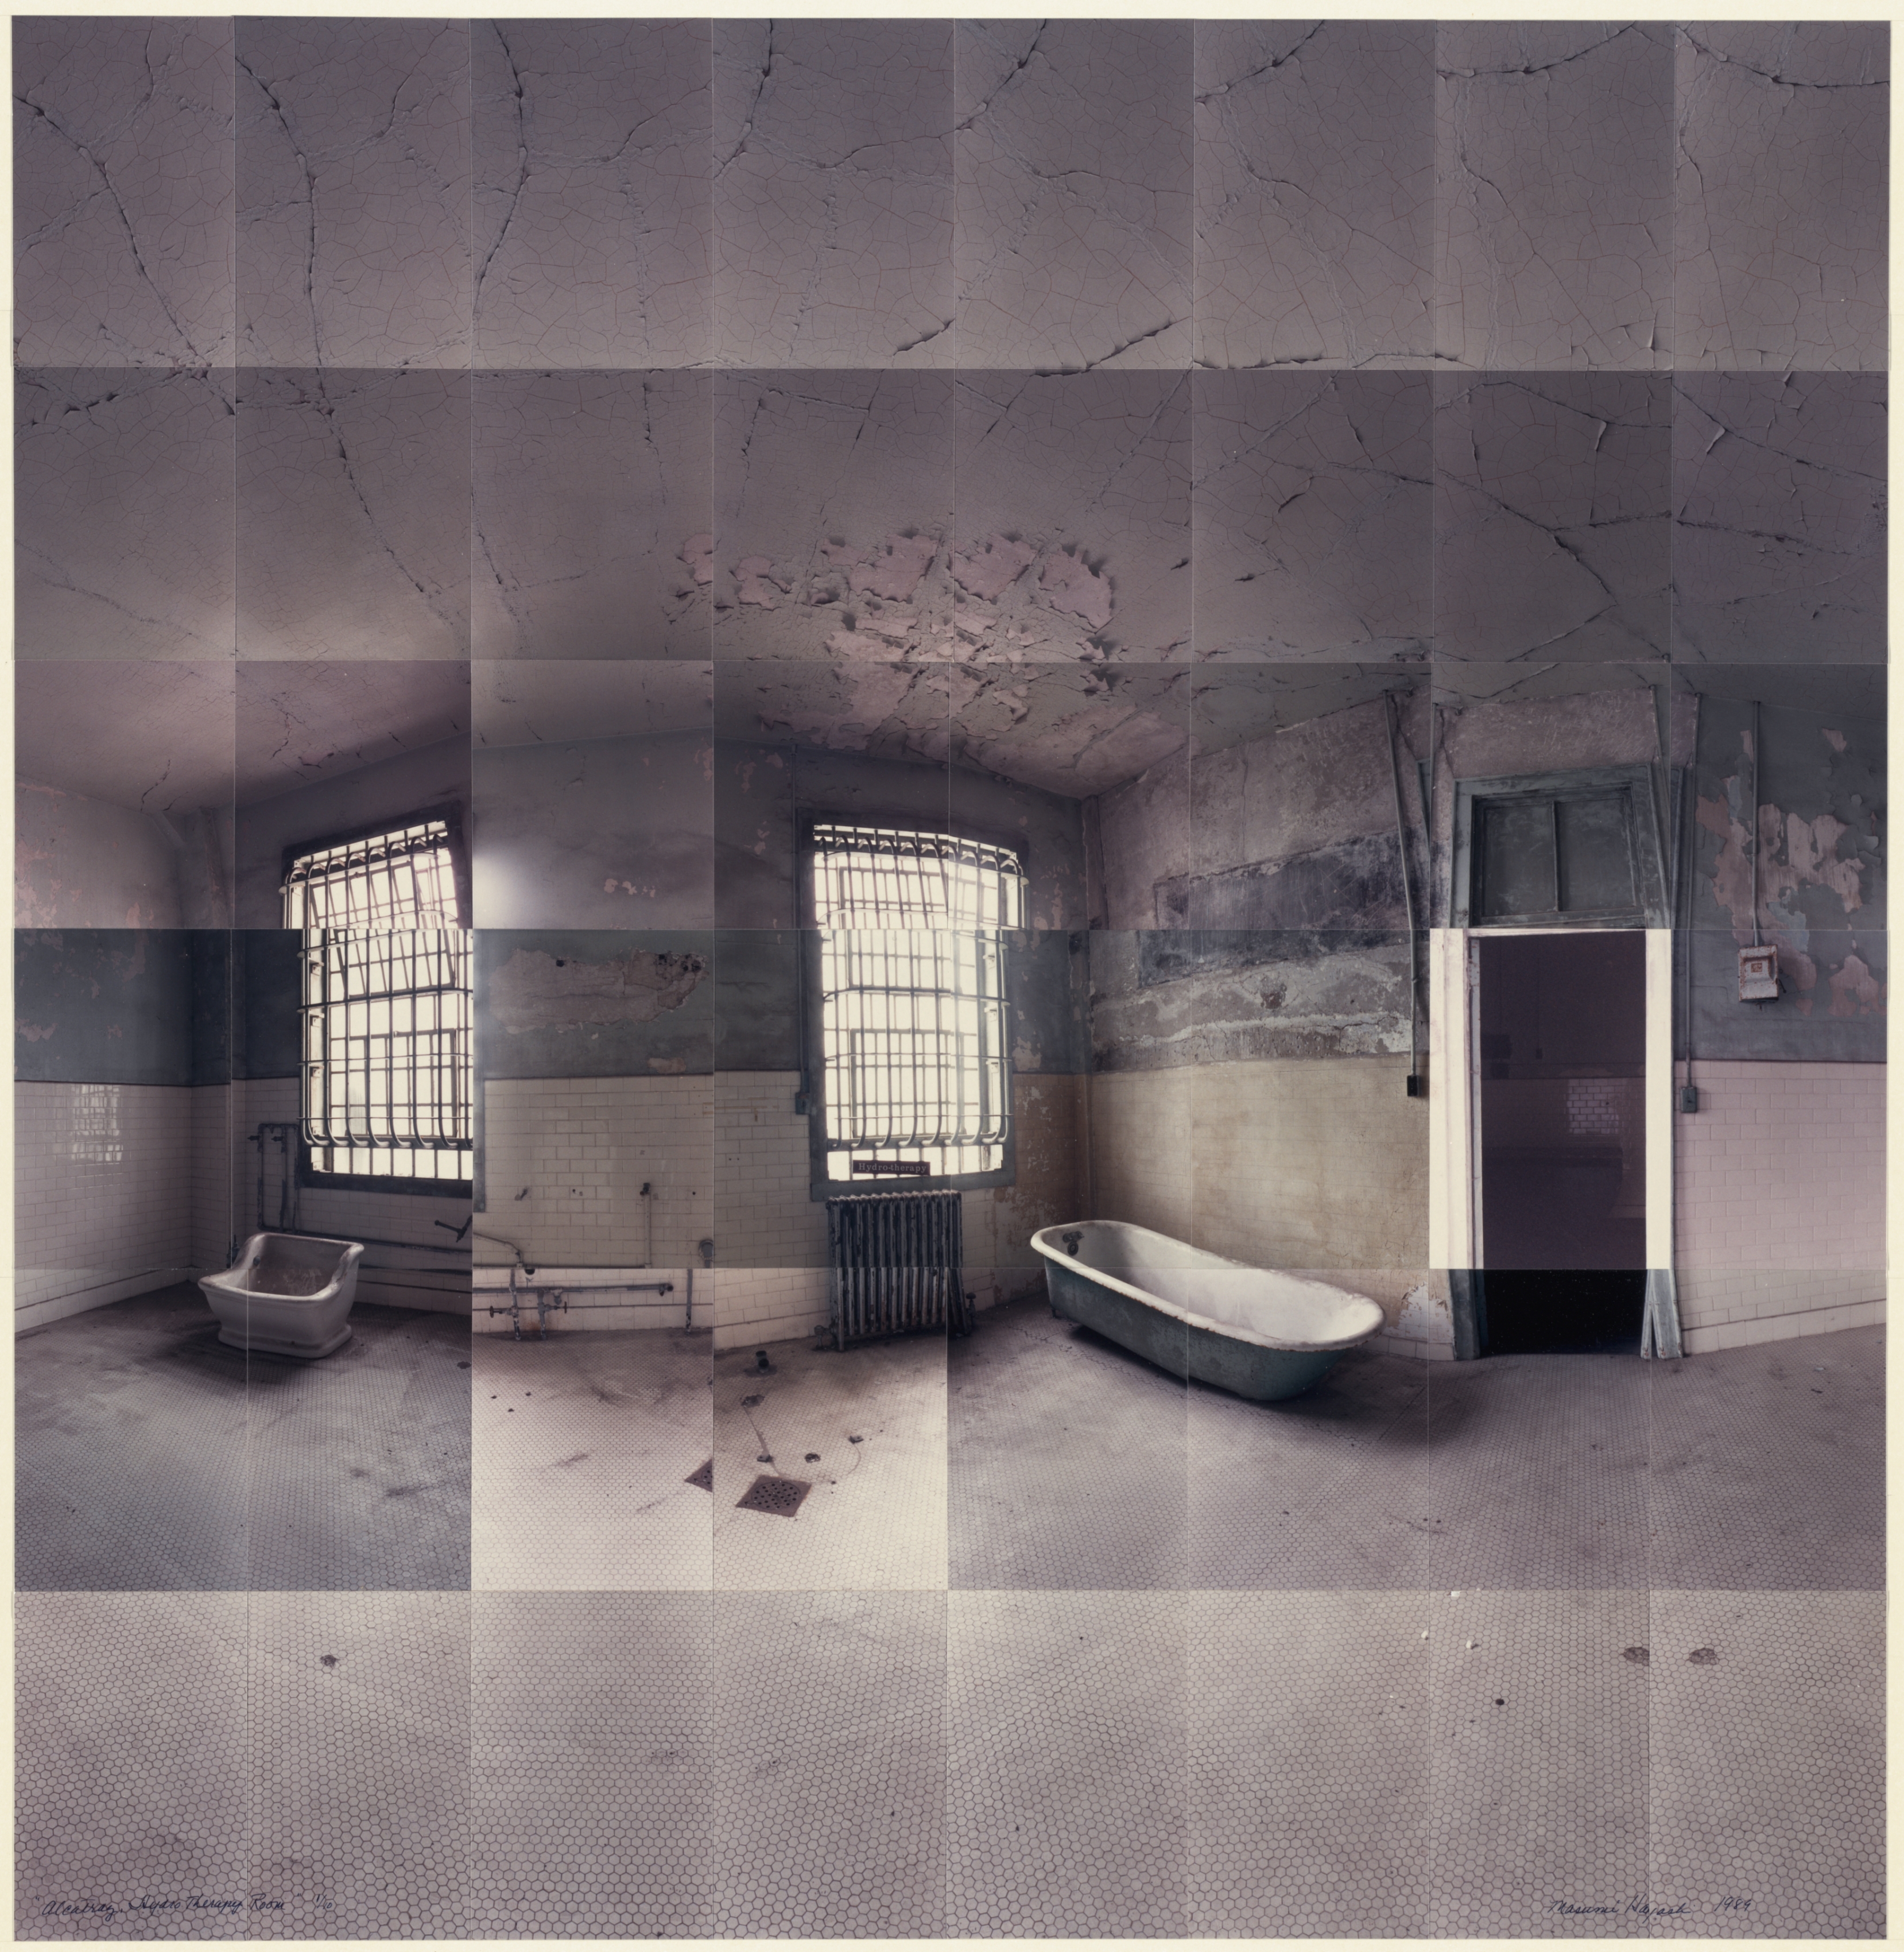 Hydro-Therapy Room, Alcatraz Prison